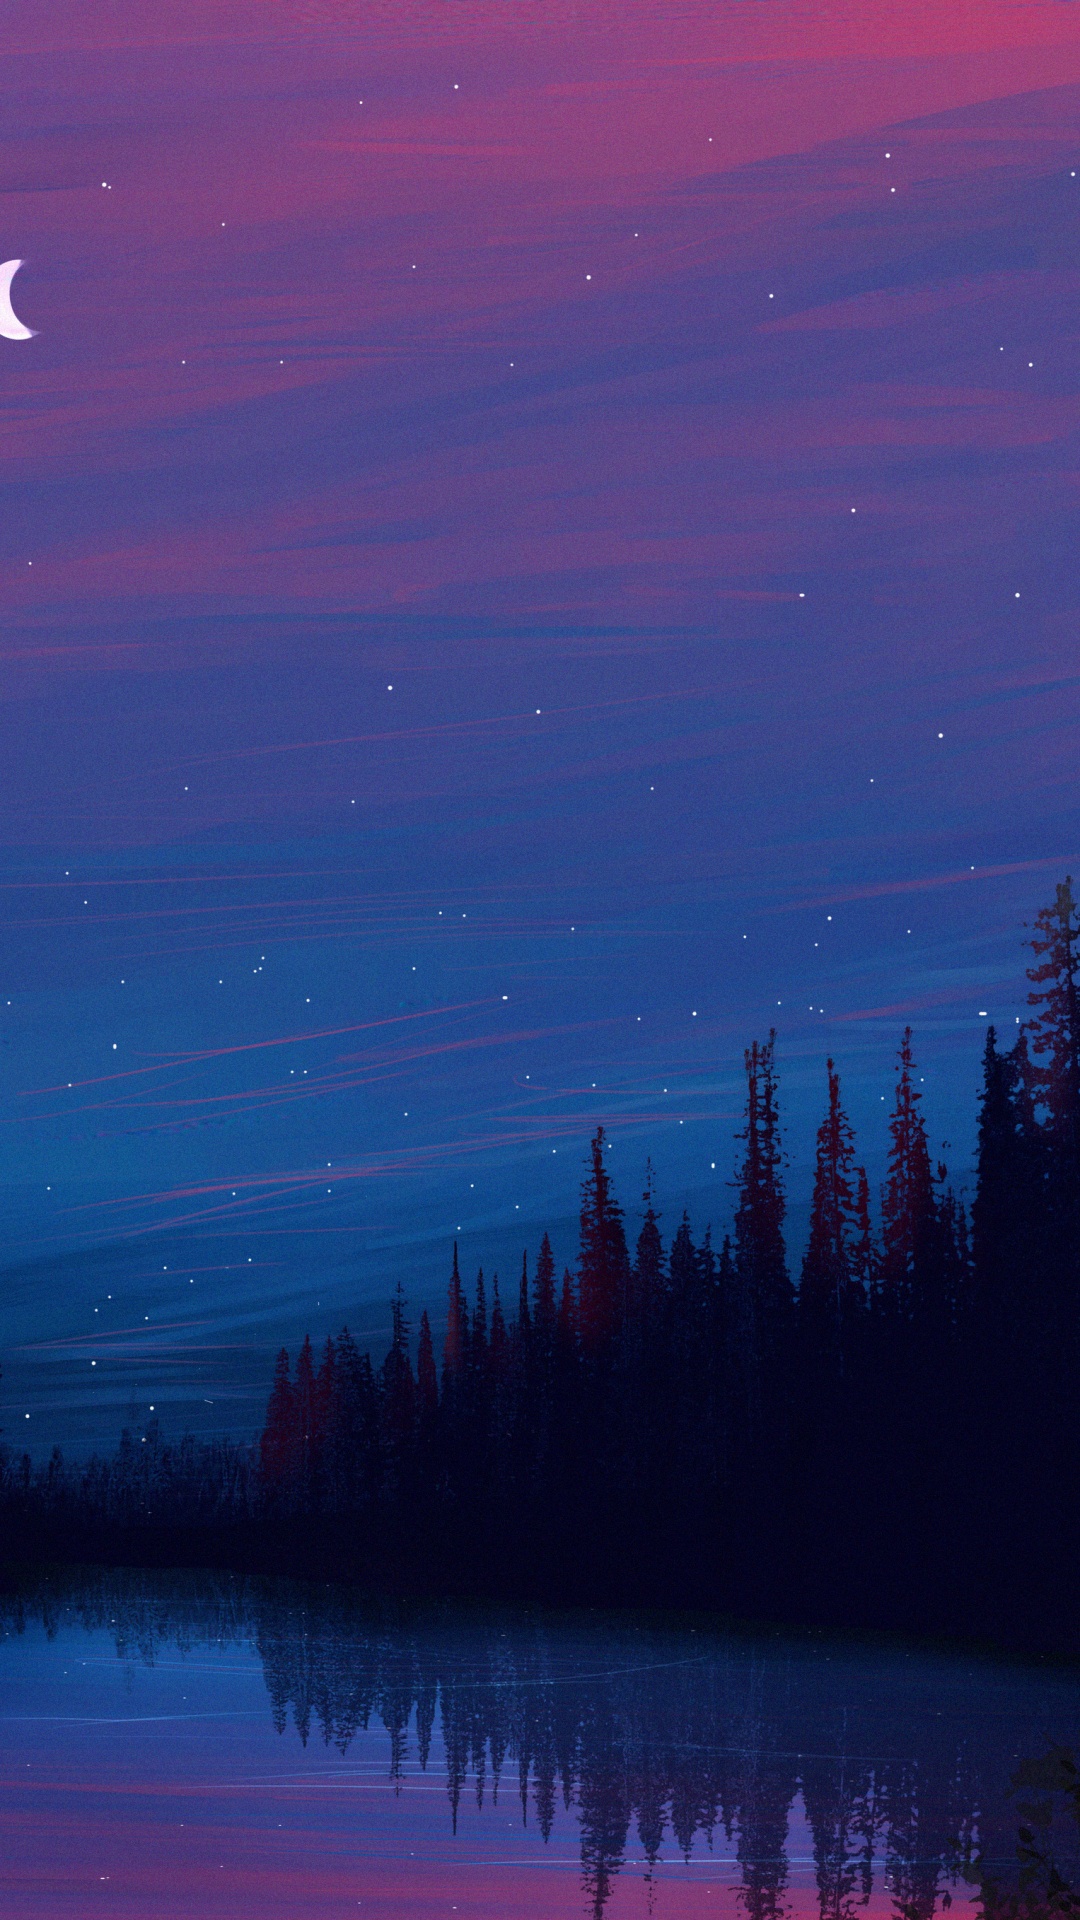 Nacht, Natur, Blau, Mond, Purpur. Wallpaper in 1080x1920 Resolution